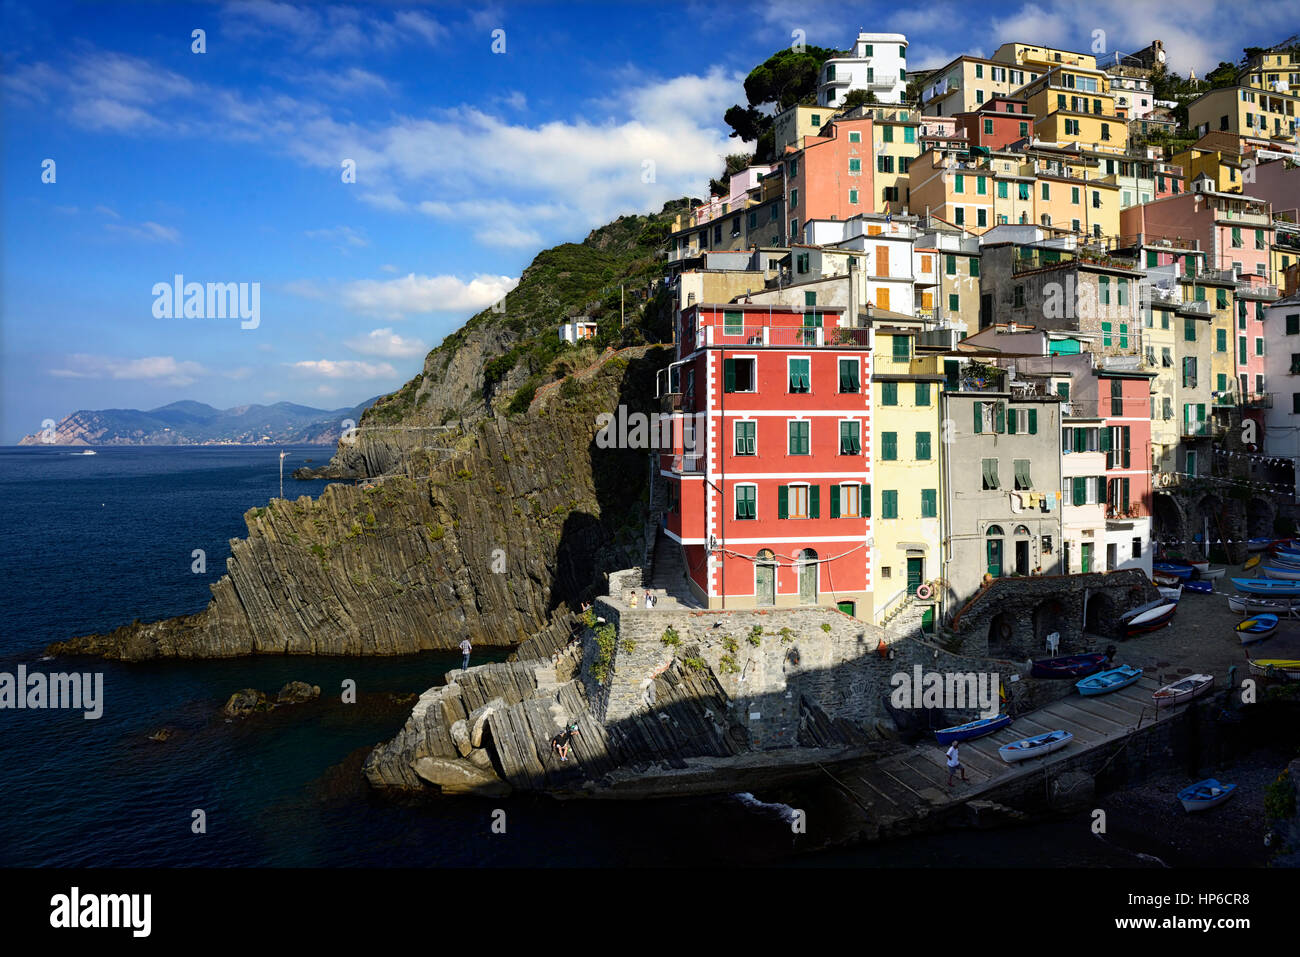 Riomaggiore, Cinque Terre, Coast, Coastline, Village, Villages, cliff, cliffs, clifftop, colourful, colorful, houses, shops, buildings, premises, tour Stock Photo